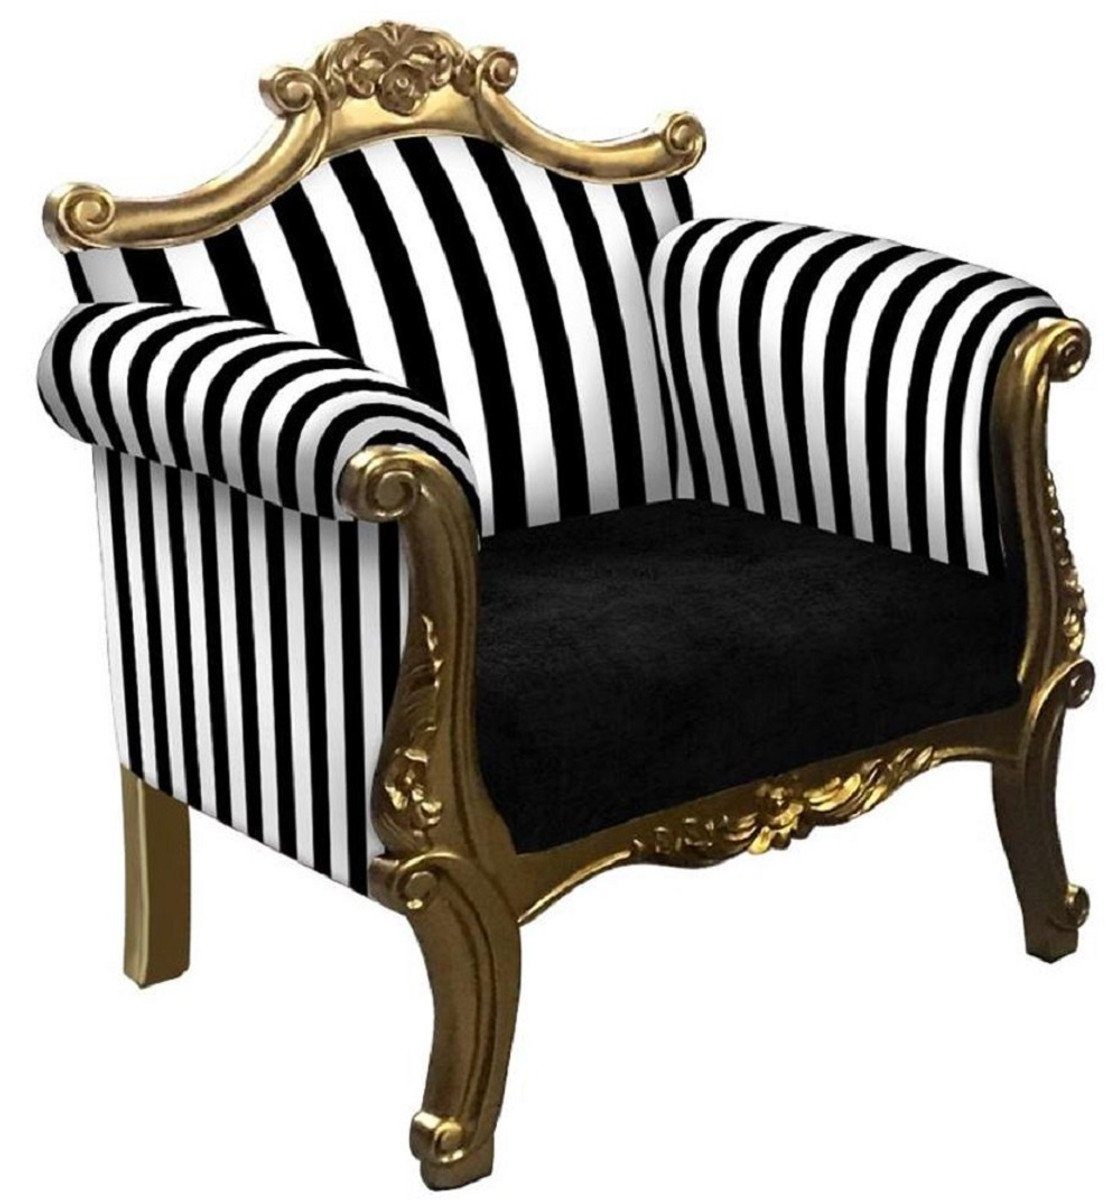 Casa Padrino Sessel Barock Sessel mit Streifen Schwarz / Weiß / Gold - Handgefertigter Wohnzimmer Sessel im Barockstil - Barock Wohnzimmer Möbel